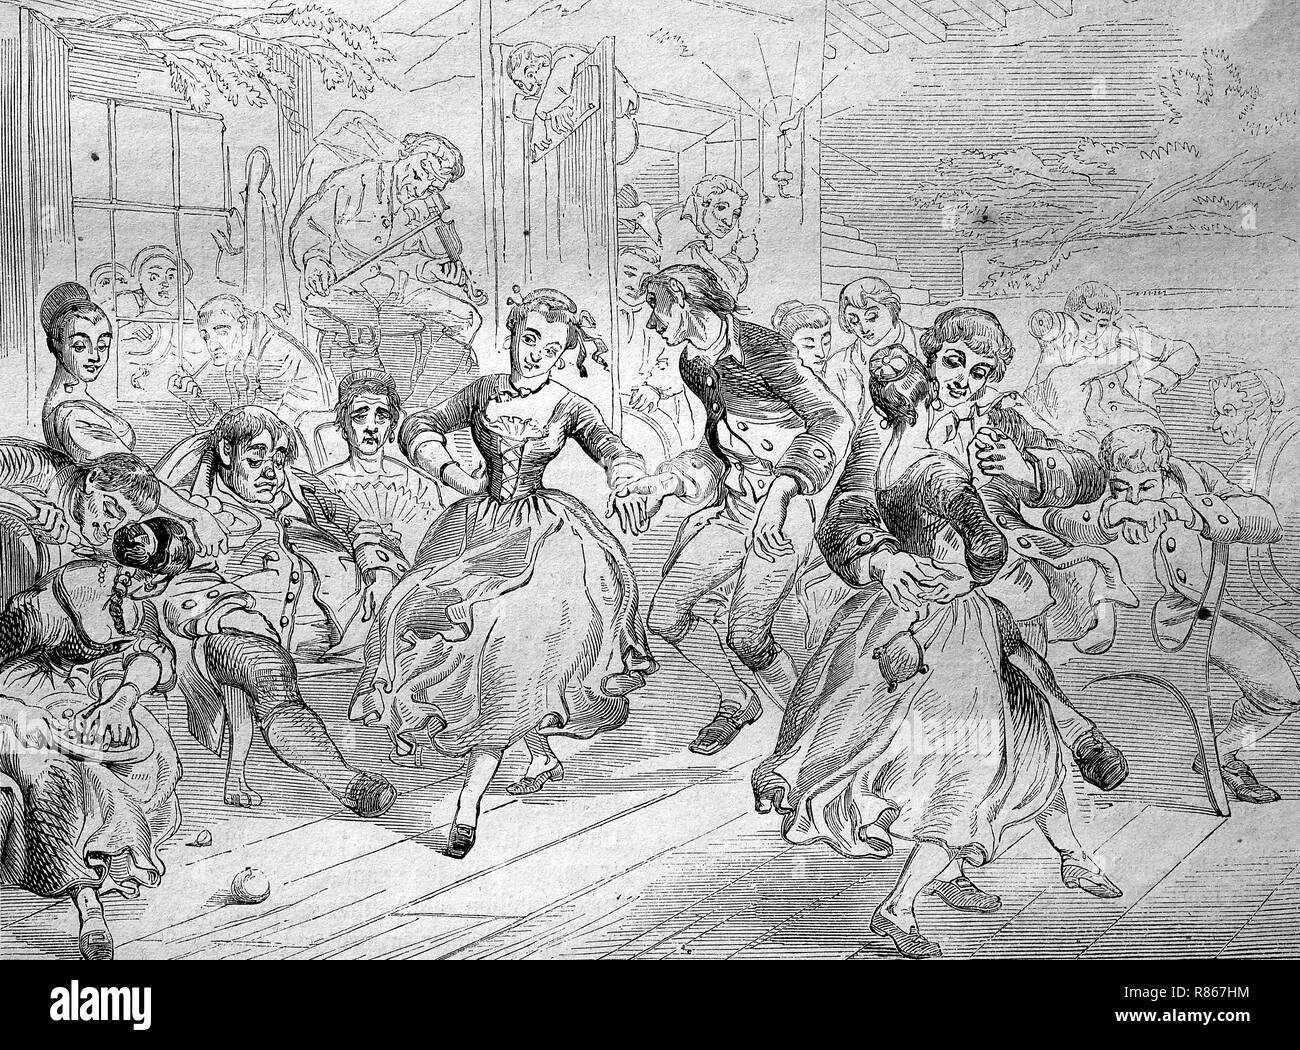 Mejor reproducción digital, el Coronel Ichabod Crane Bennett, 1787-1857, en una fiesta, Ichabod Crane Bennett bei einem Ball, de una impresión original desde el año 1855 Foto de stock